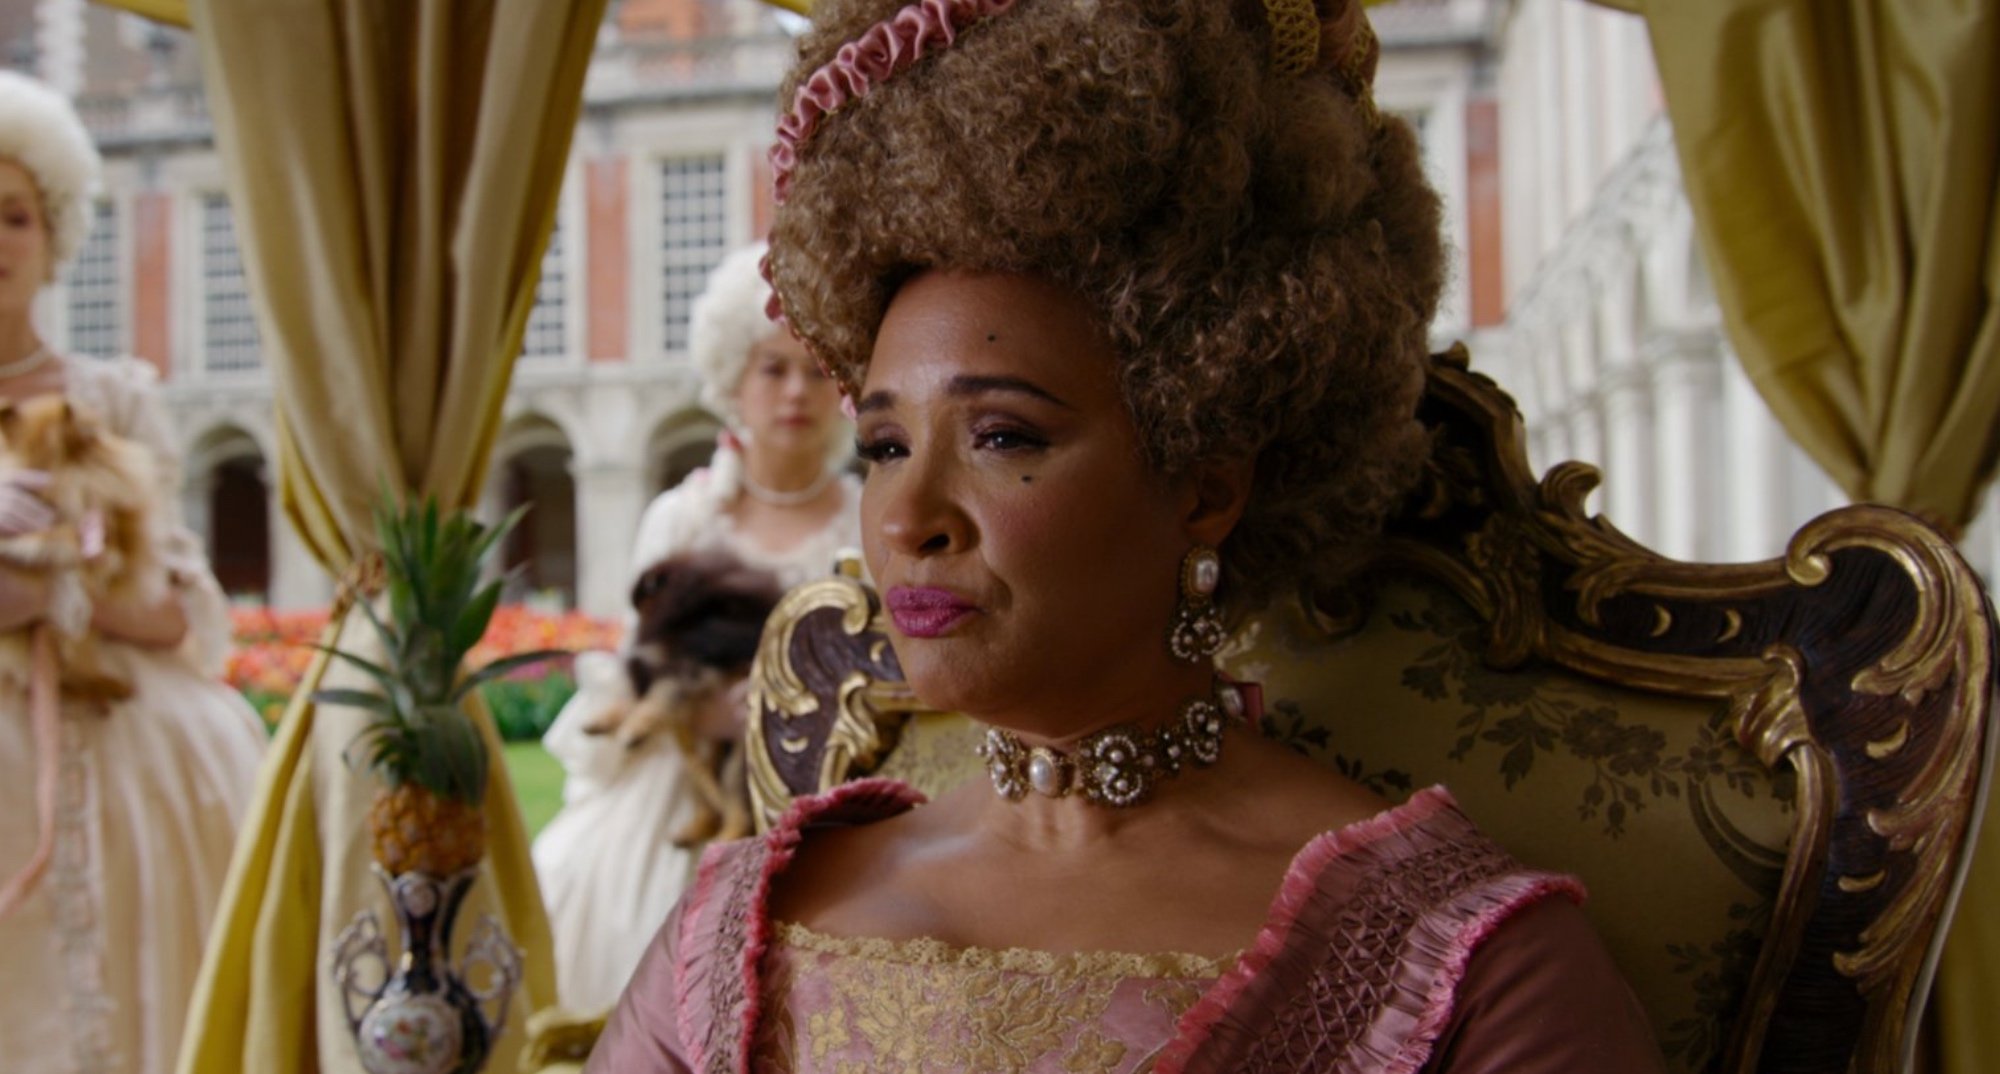 Golda Rosheuvel as the queen in 'Bridgerton' Season 2 in her carriage.